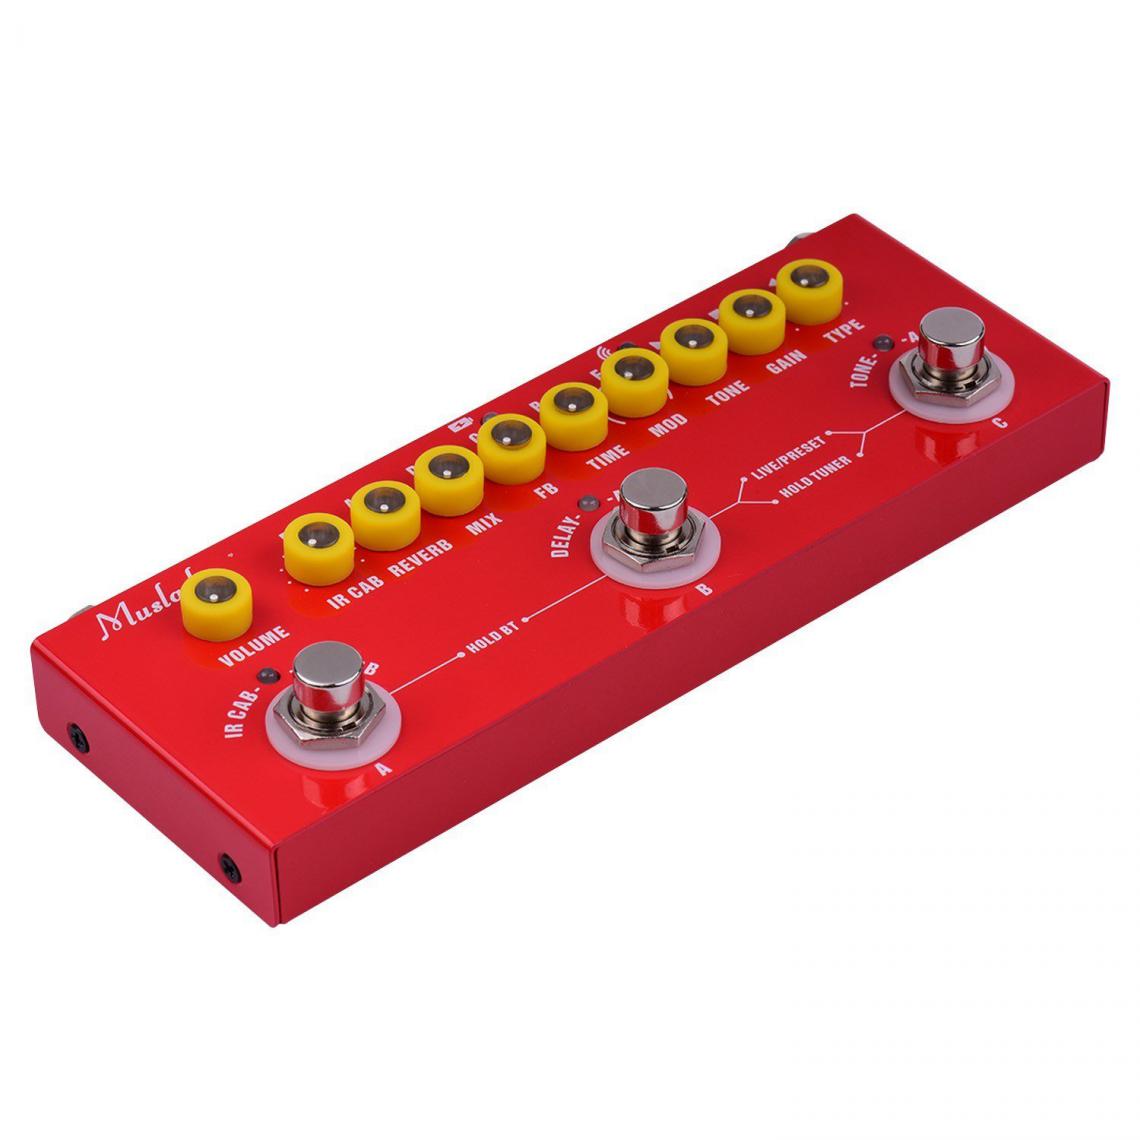 Justgreenbox - Pédale d'effets combinés portable pour guitare électrique multifonctionnelle - 1005001319541165 - Effets guitares